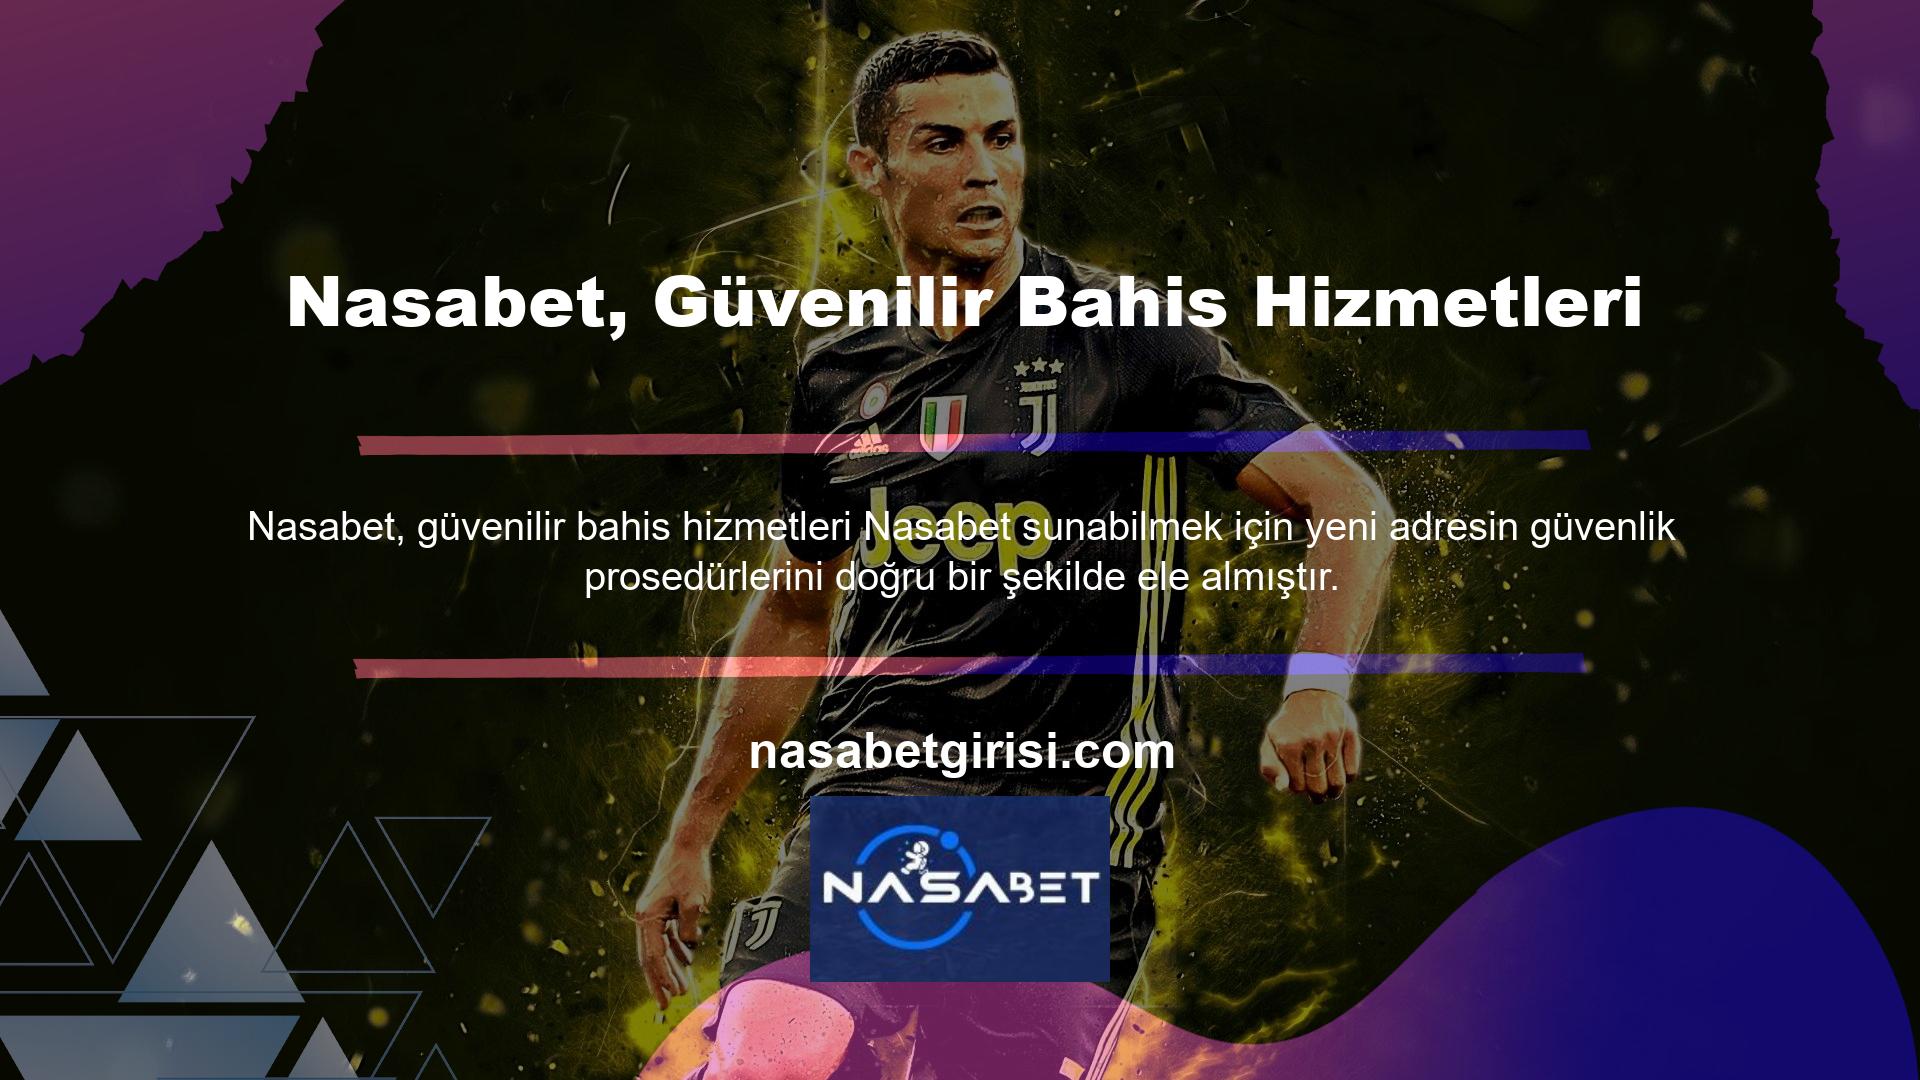 Her zaman olduğu gibi, Nasabet Casino Games müşteri hizmetleri/canlı destek ve oyun sağlayıcı aynı internet alanını paylaşmaktadır, dolayısıyla bunlara oyun sitesinin ana sayfasından erişilmesi gerekmektedir